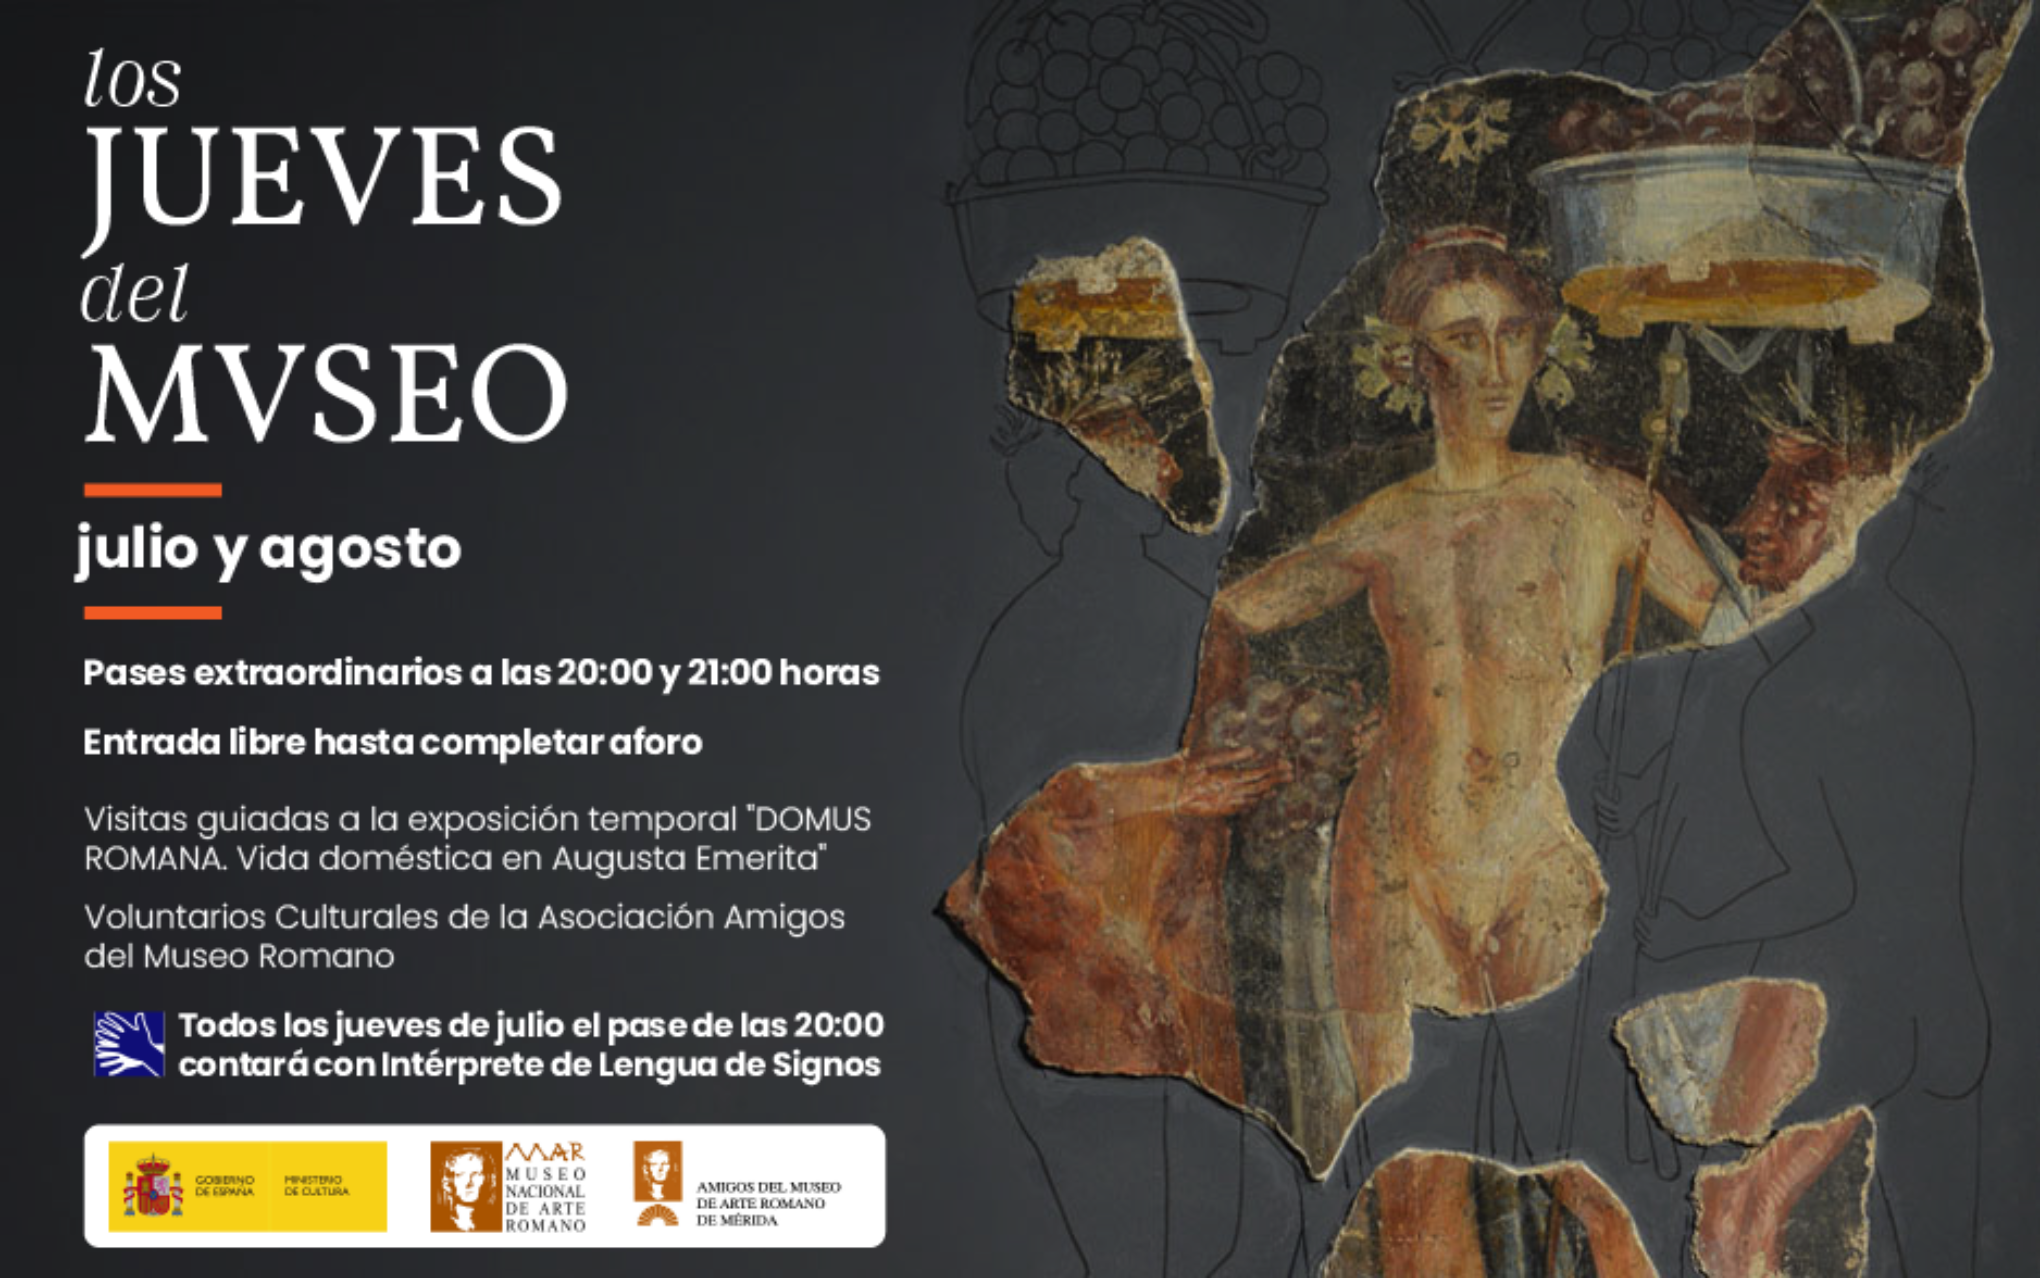 Jueves del Museo – Museo Nacional de Arte Romano de Mérida